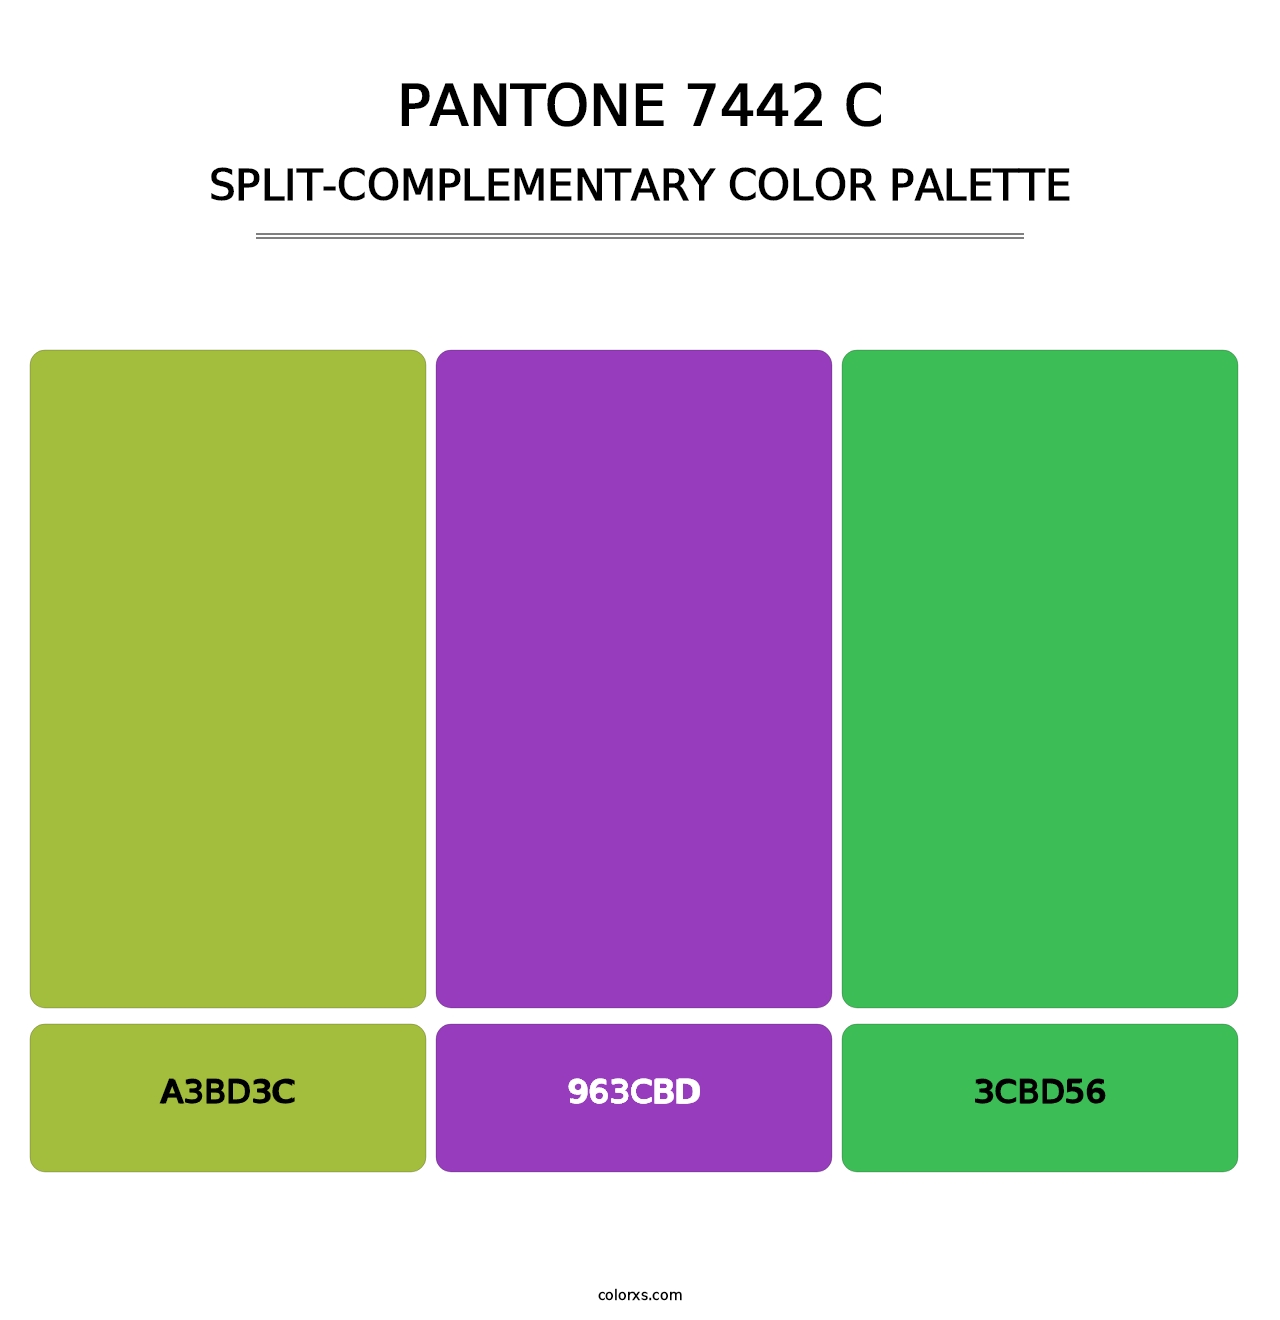 PANTONE 7442 C - Split-Complementary Color Palette